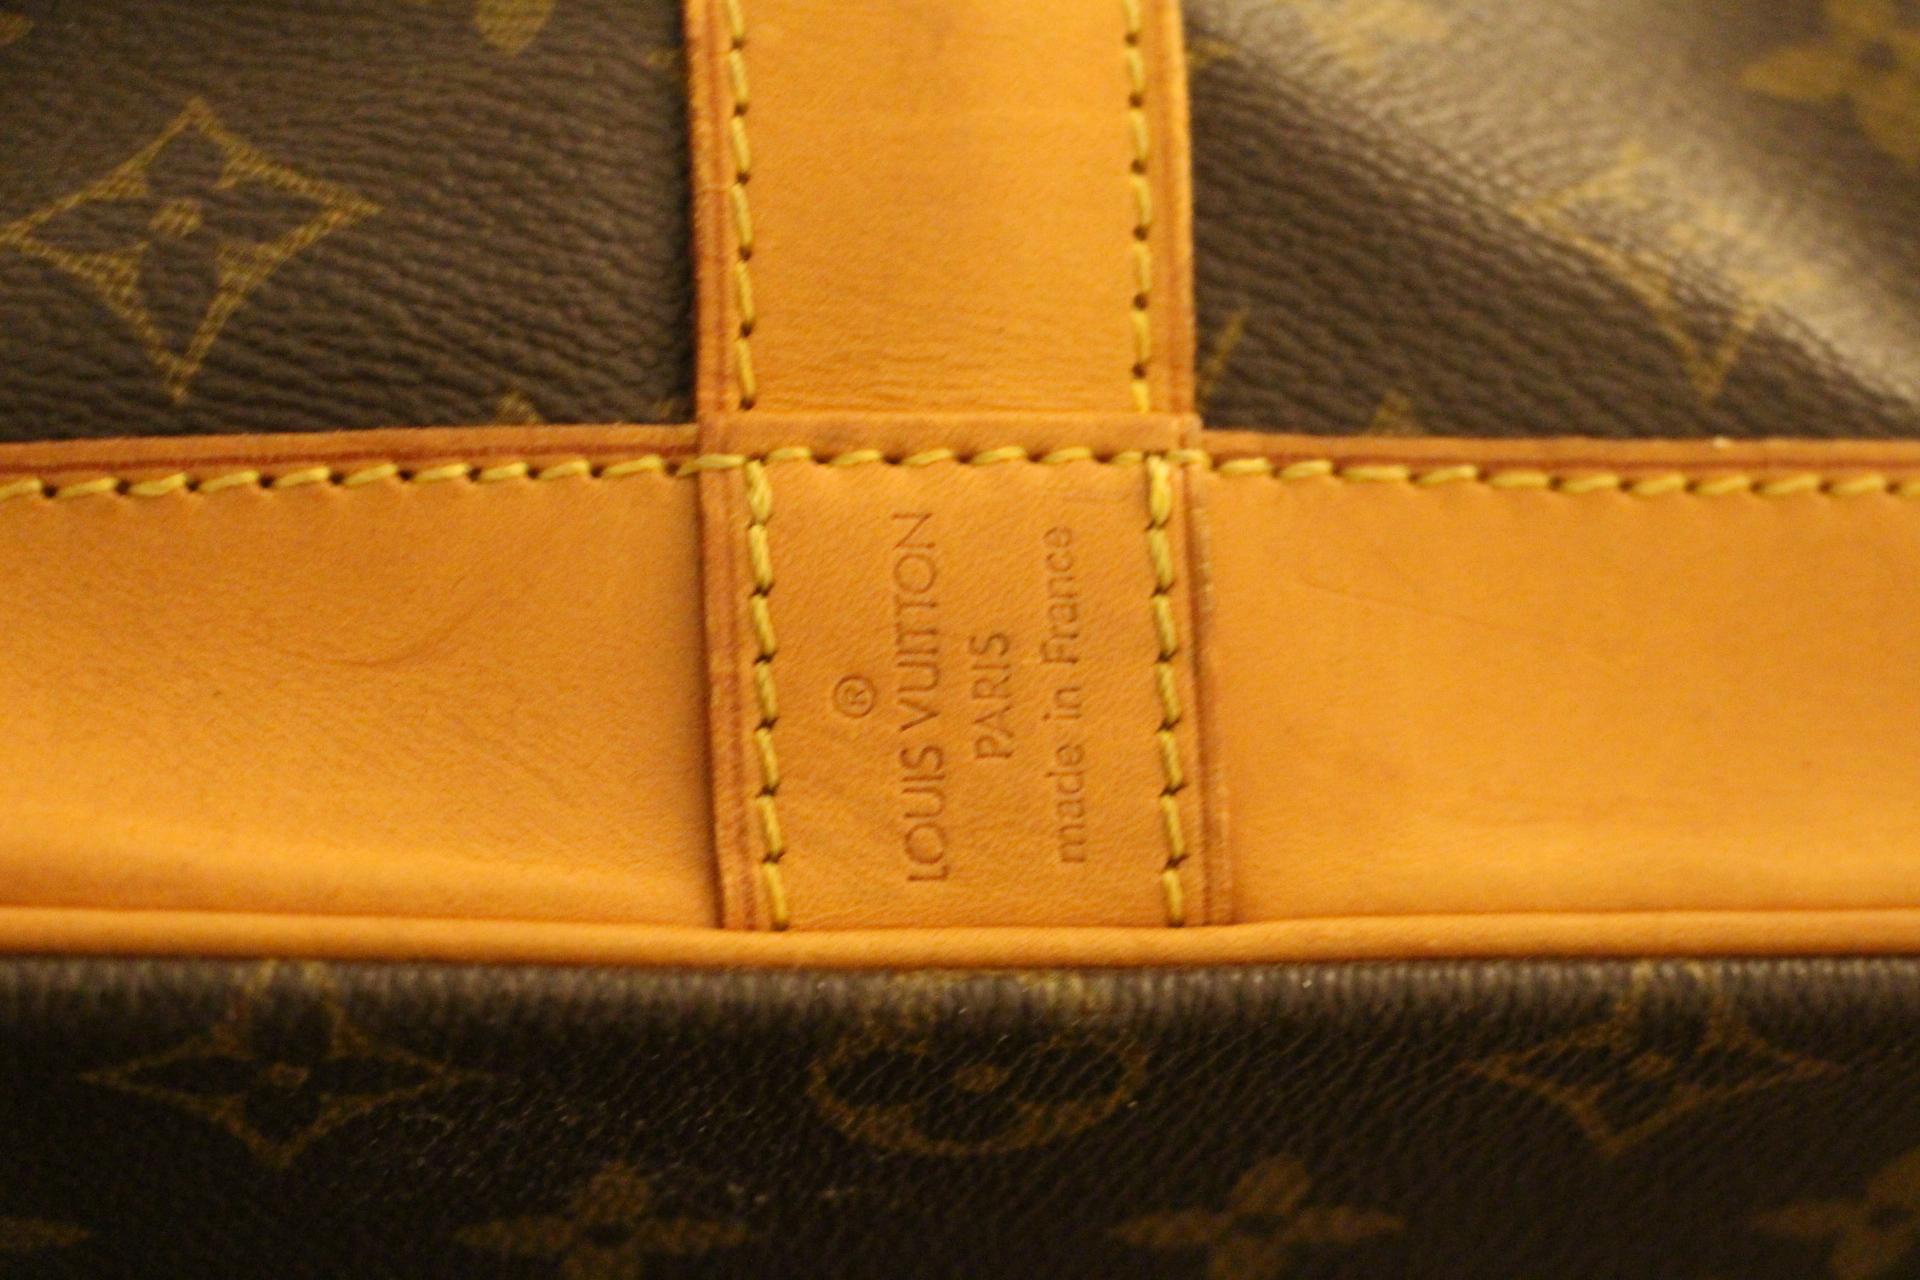 Large Louis Vuitton Bag 50, Large Louis Vuitton Duffle Bag, Louis Vuitton Travel 8